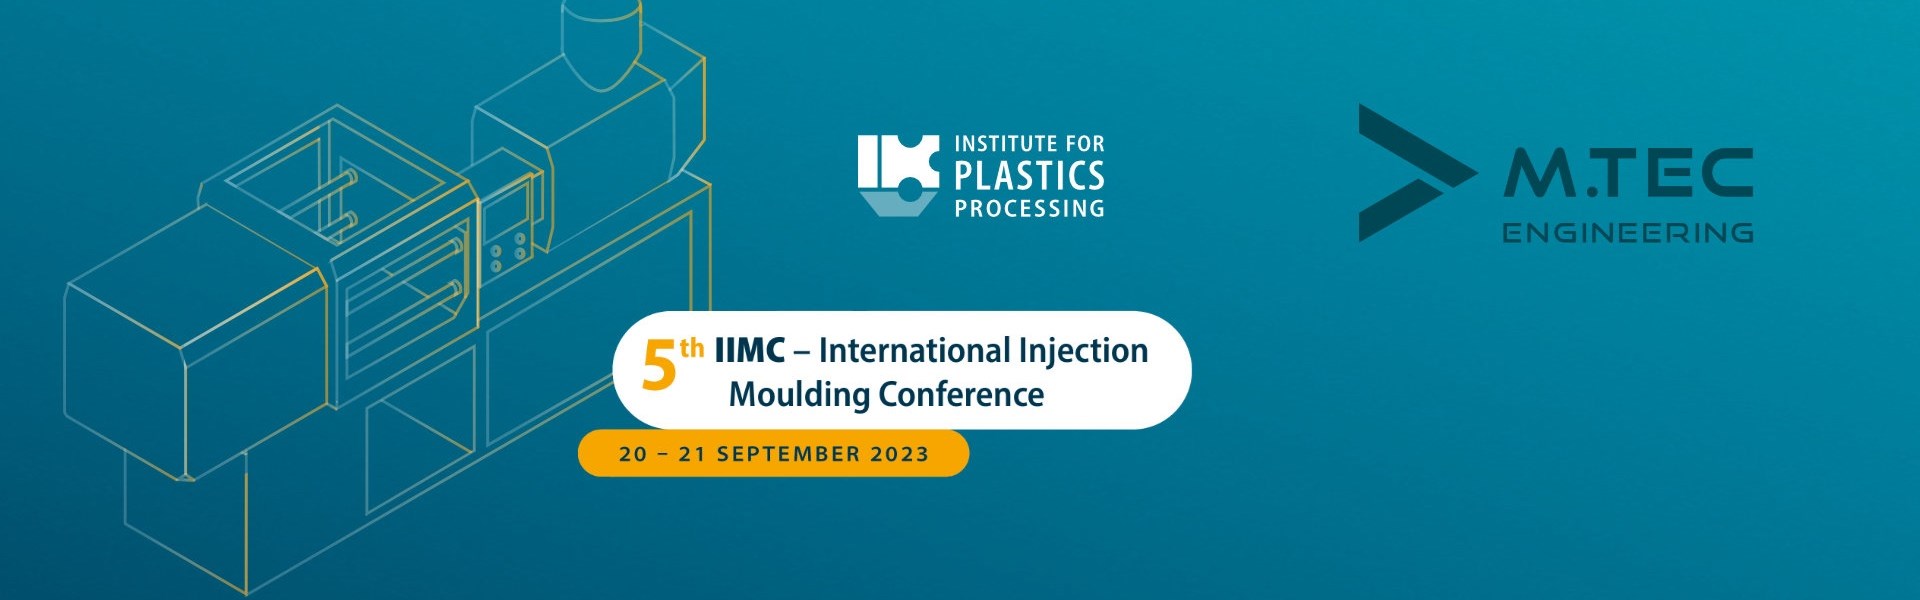 M.TEC mit Vortrag zu KI-basierter Spritzgussoptimierung auf der 5. International Injection Moulding Conference